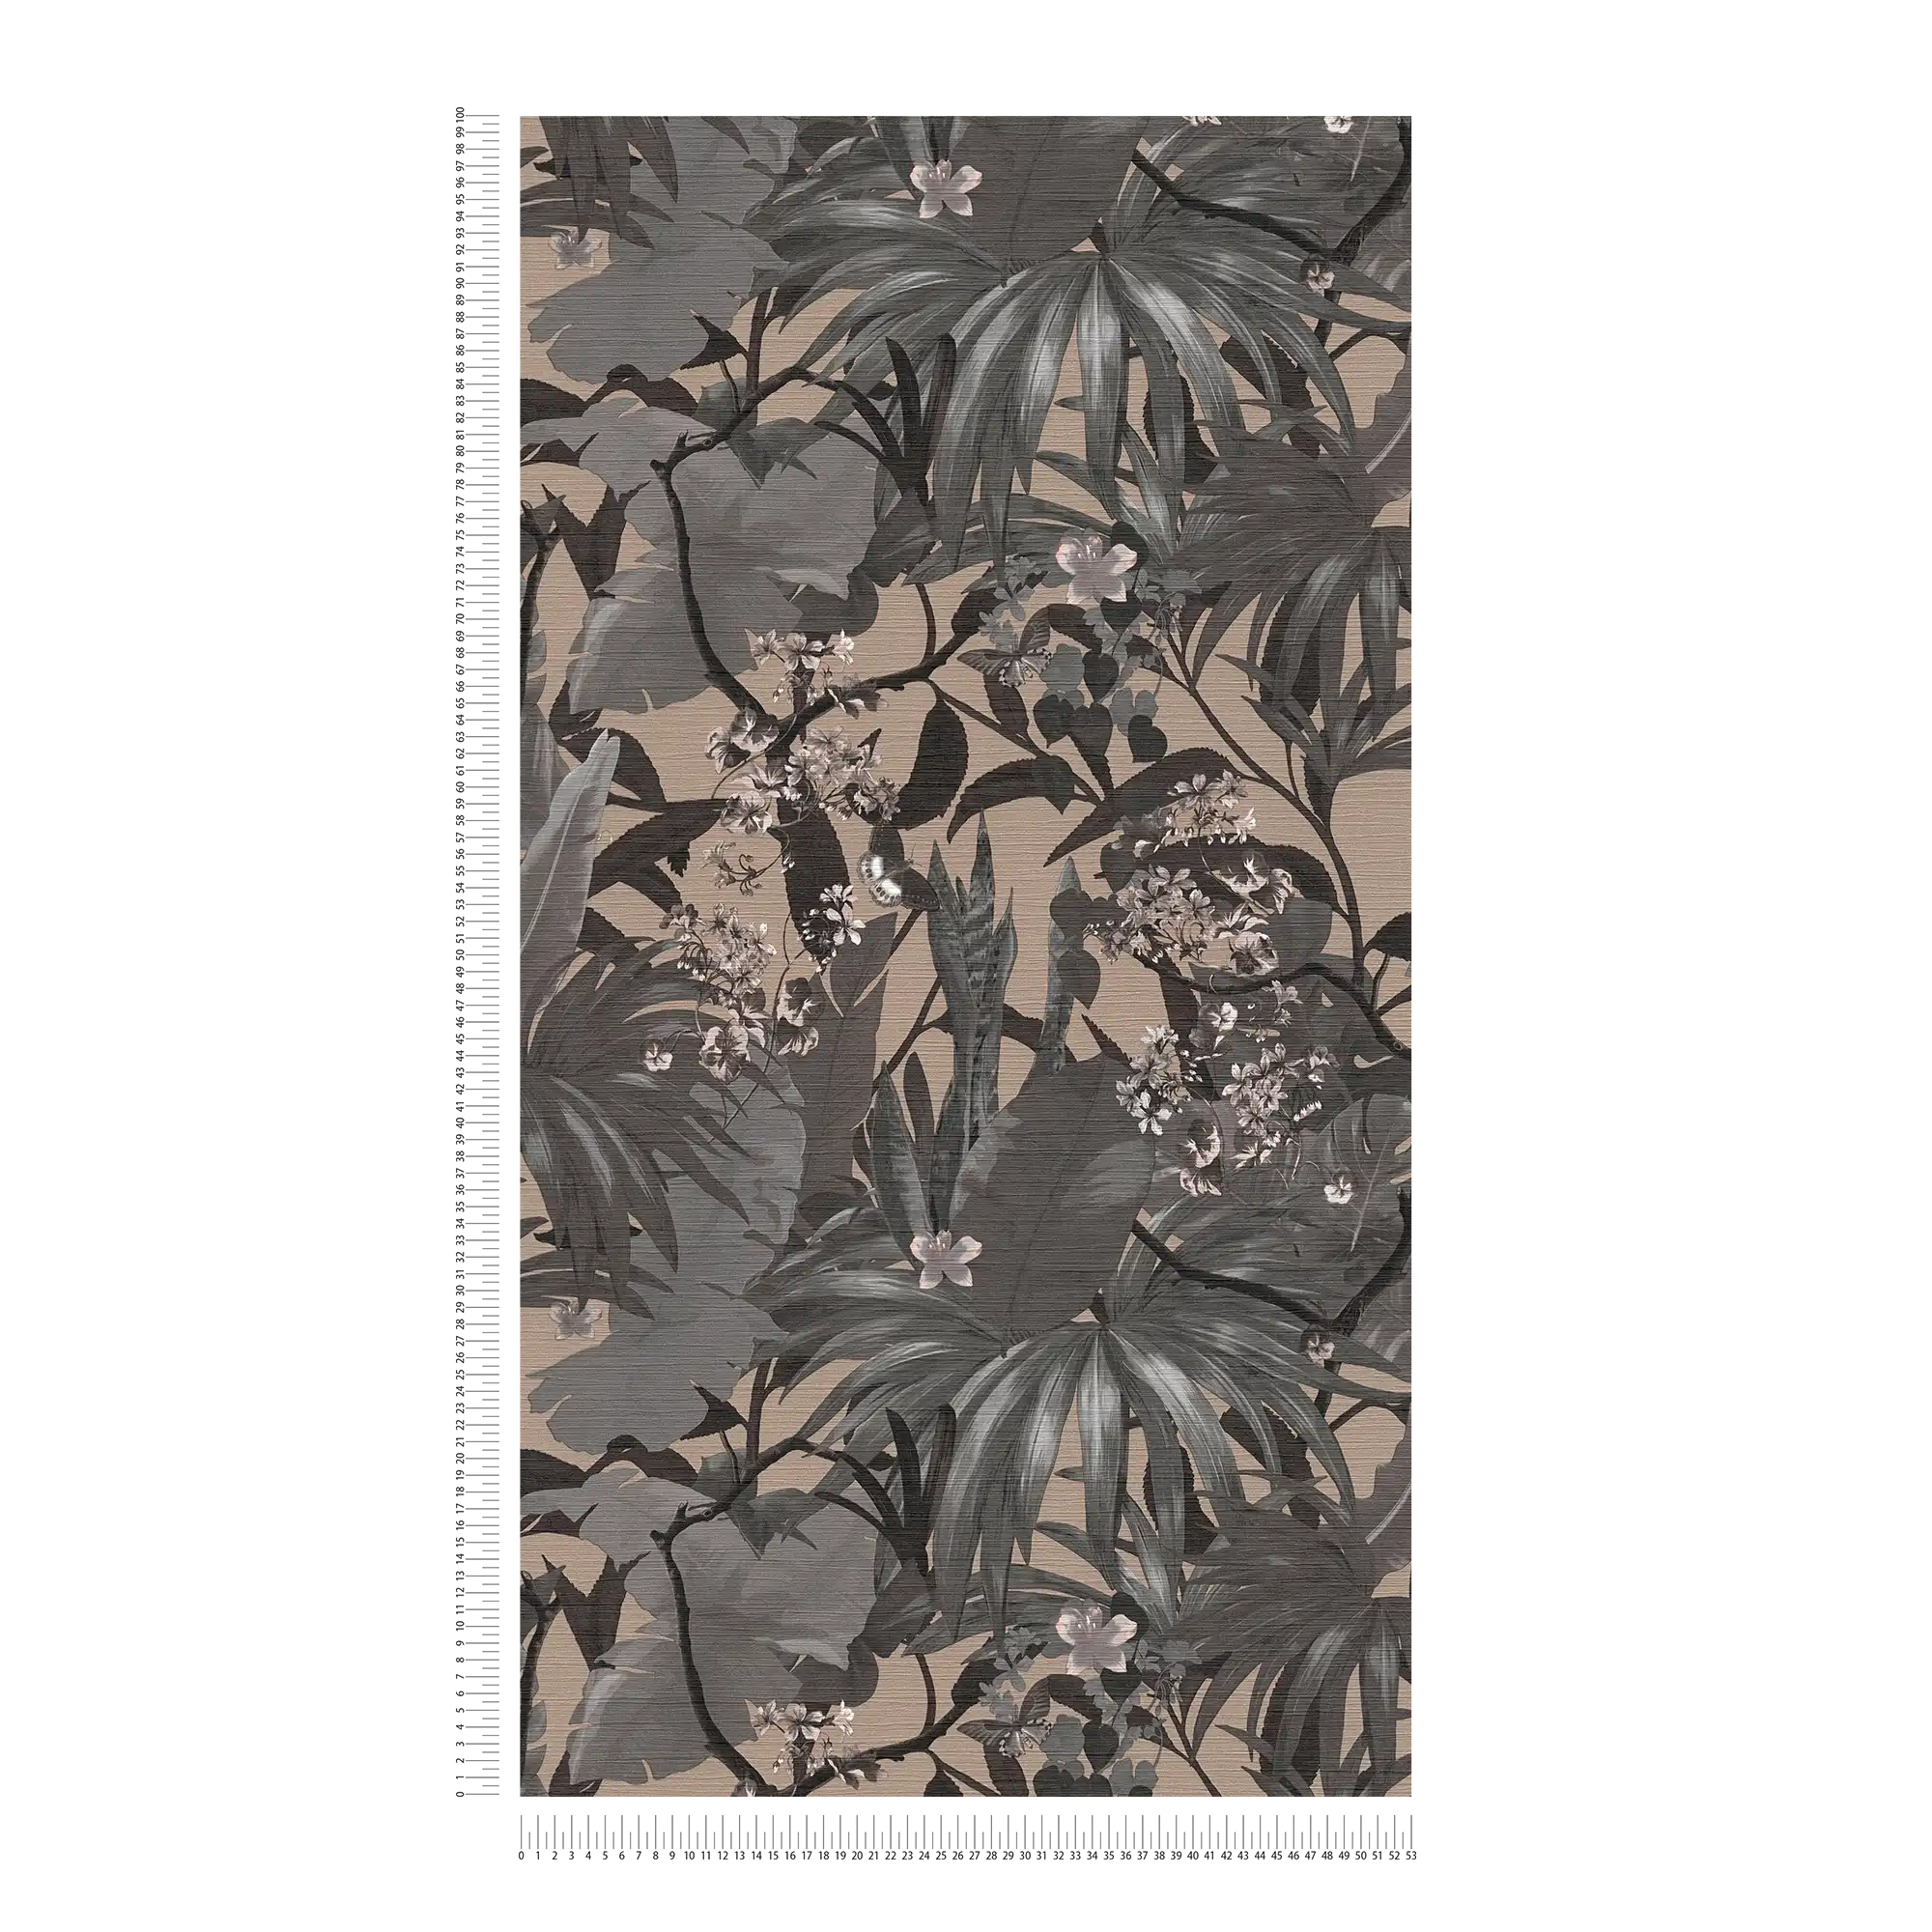             Dschungel-Tapete Blättermuster – Grau, Beige
        